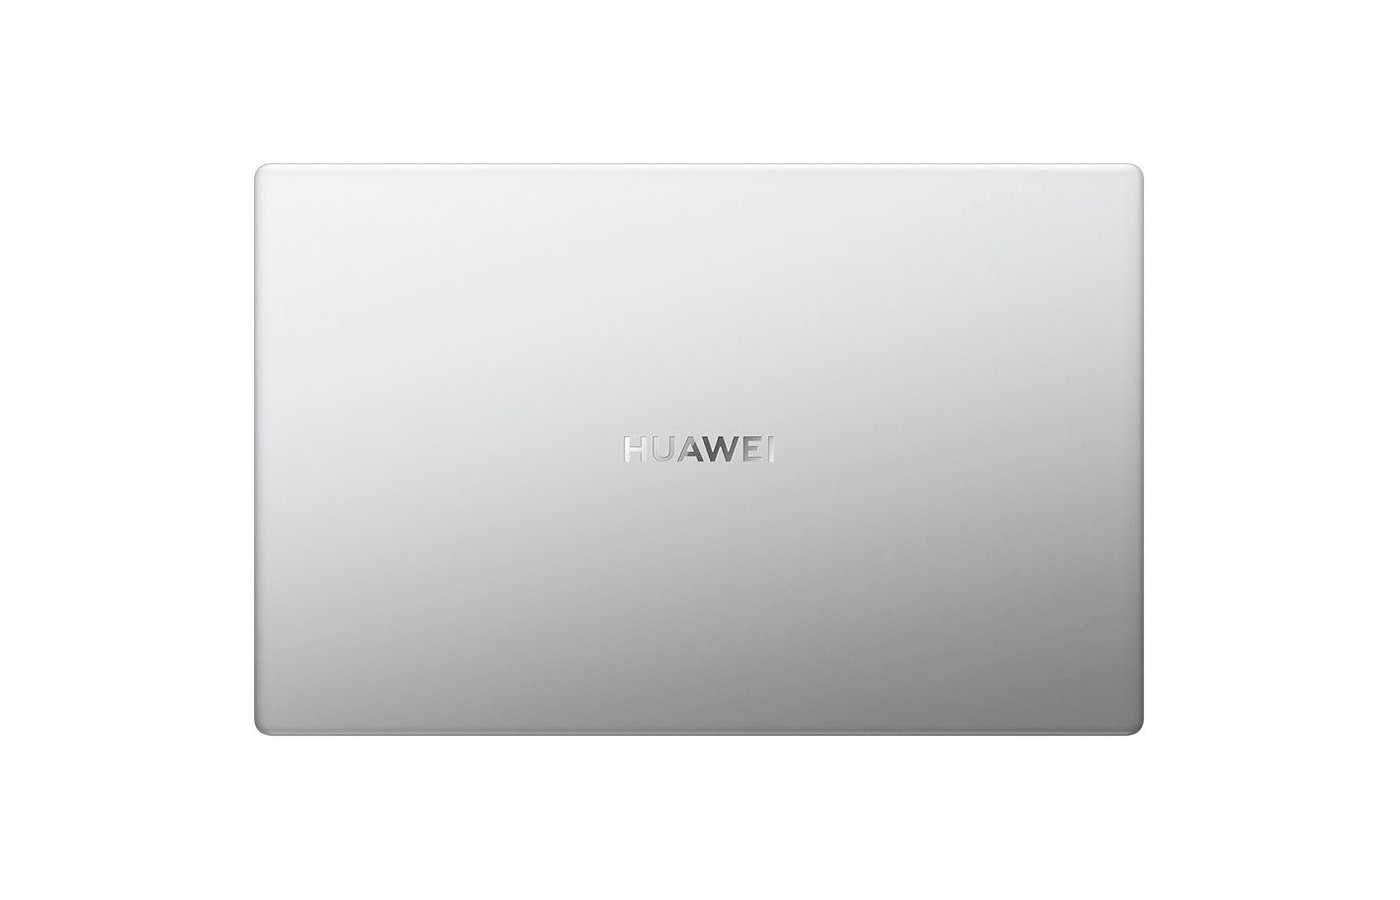 D 15 bode wdh9. Ноутбук Huawei MATEBOOK D 15 bod. Ноутбук Huawei MATEBOOK d15 bod-wdh9 i5/8gb/512gb Mystic Silver. Ноутбук Huawei MATEBOOK D 15 2021 bod-wdh9 8/512gb Mystic Silver. Ноутбук Huawei MATEBOOK d15 bod-wdh9 Silver.